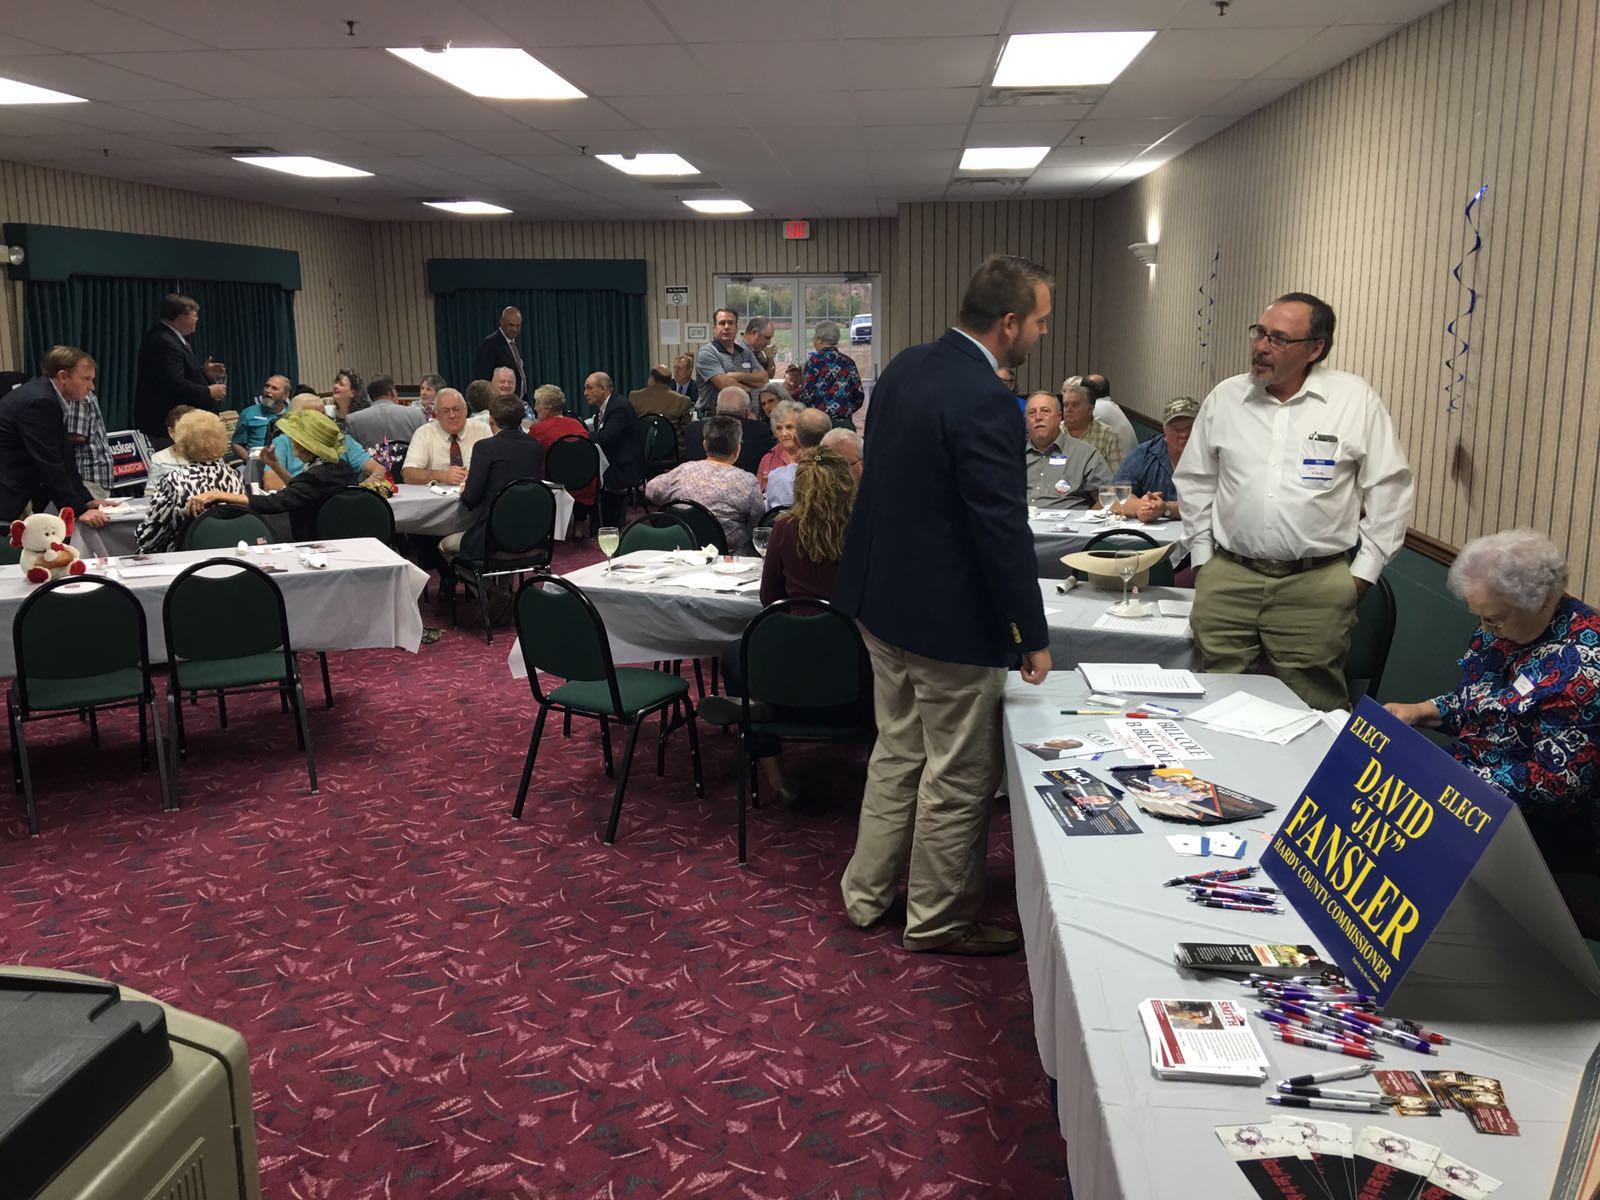 Une salle de réunion: le "Reagan Dinner" des républicains du "Hardy County" à Moorefield, West Virginia. [RTS - Philippe Revaz]